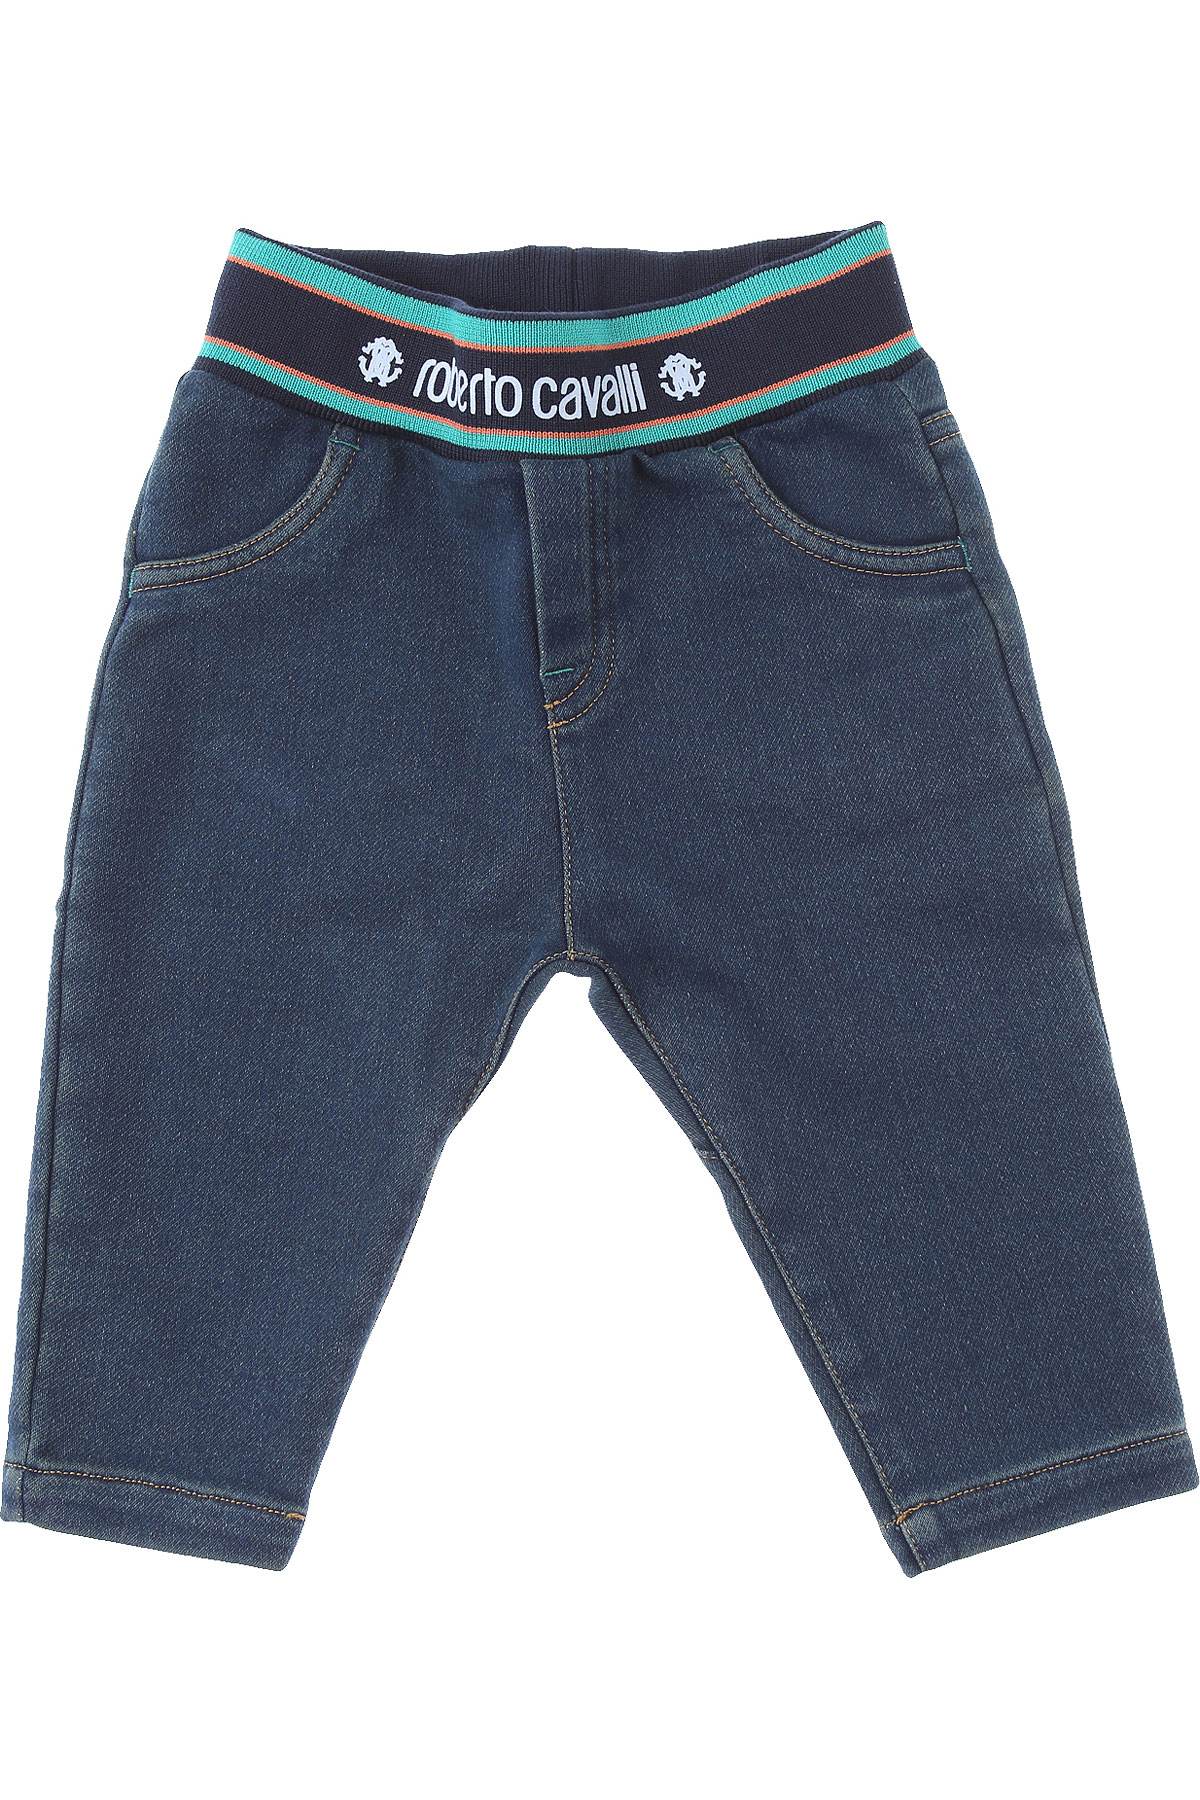 Roberto Cavalli Baby Jeans für Jungen Günstig im Sale, Denim Blau, Baumwolle, 2017, 12 M 18 M 2Y 3Y